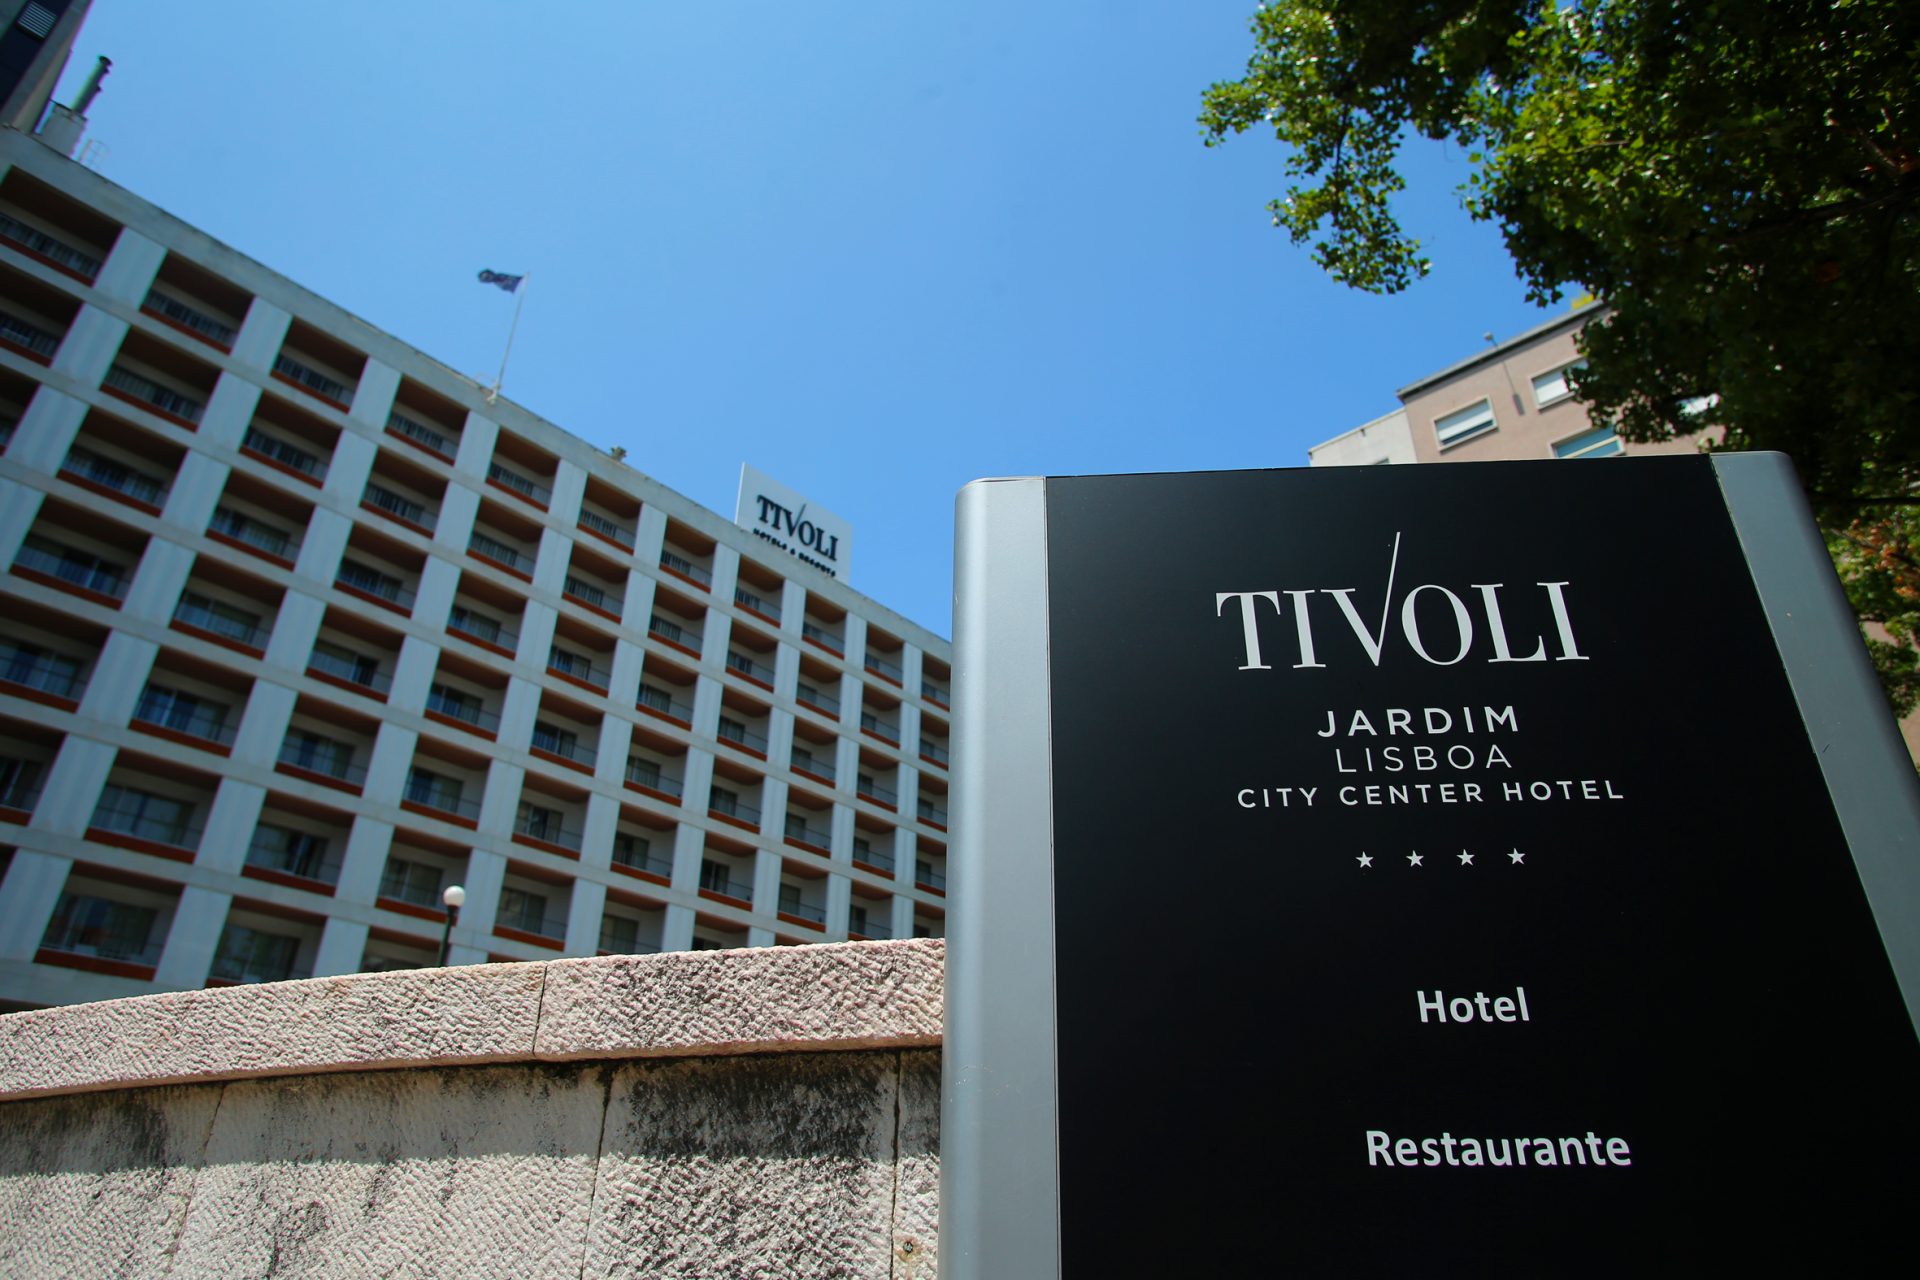 Hotéis Tivoli recorrem a Processo Especial de Revitalização